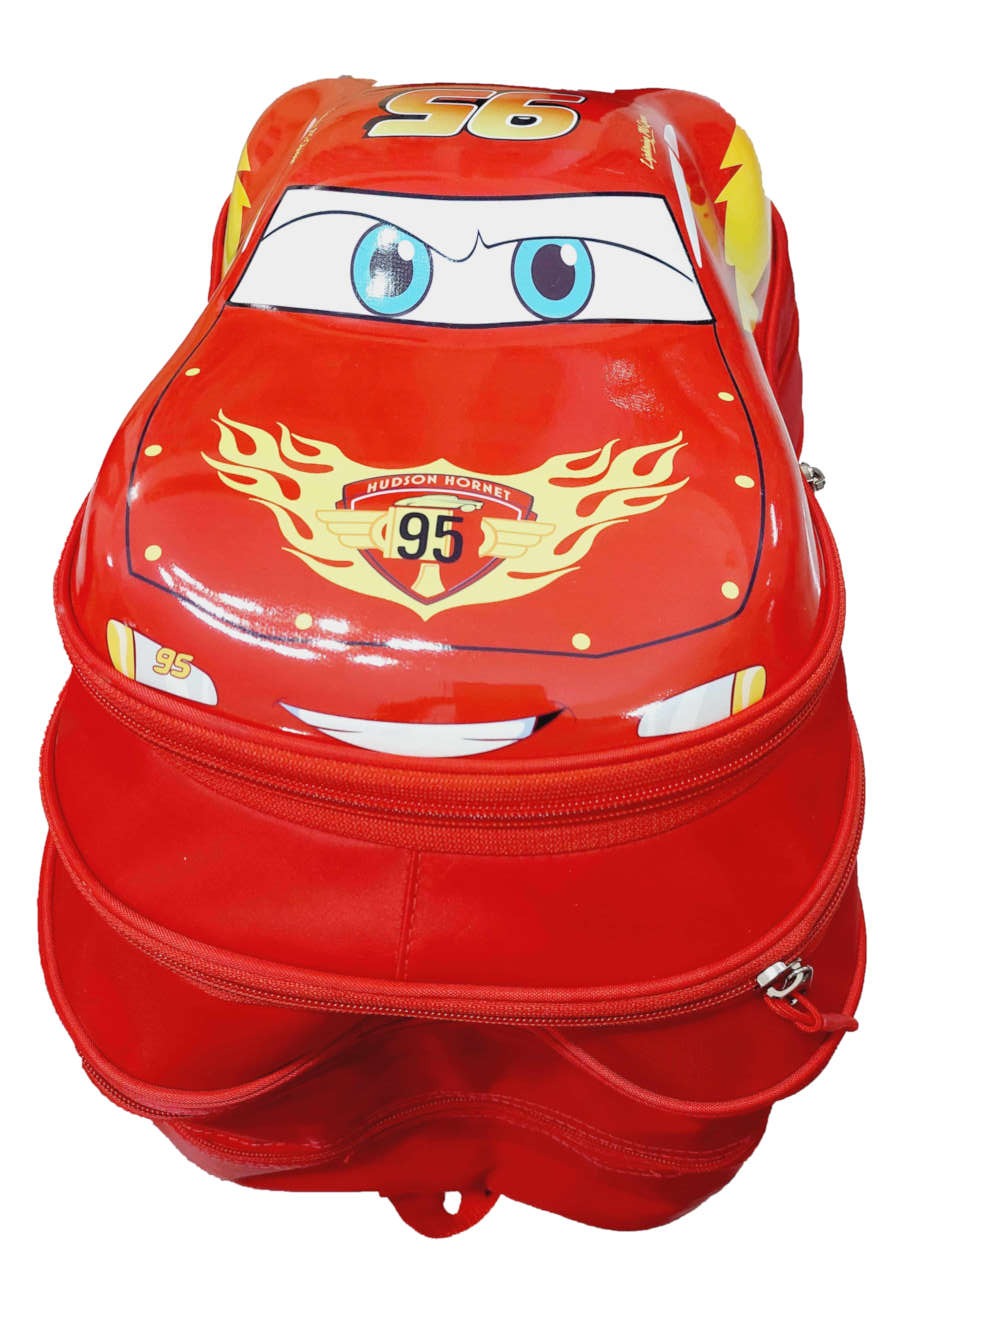 School Bag For Kids/Boys- McQueen 3D Backpack Disney Cars Themed